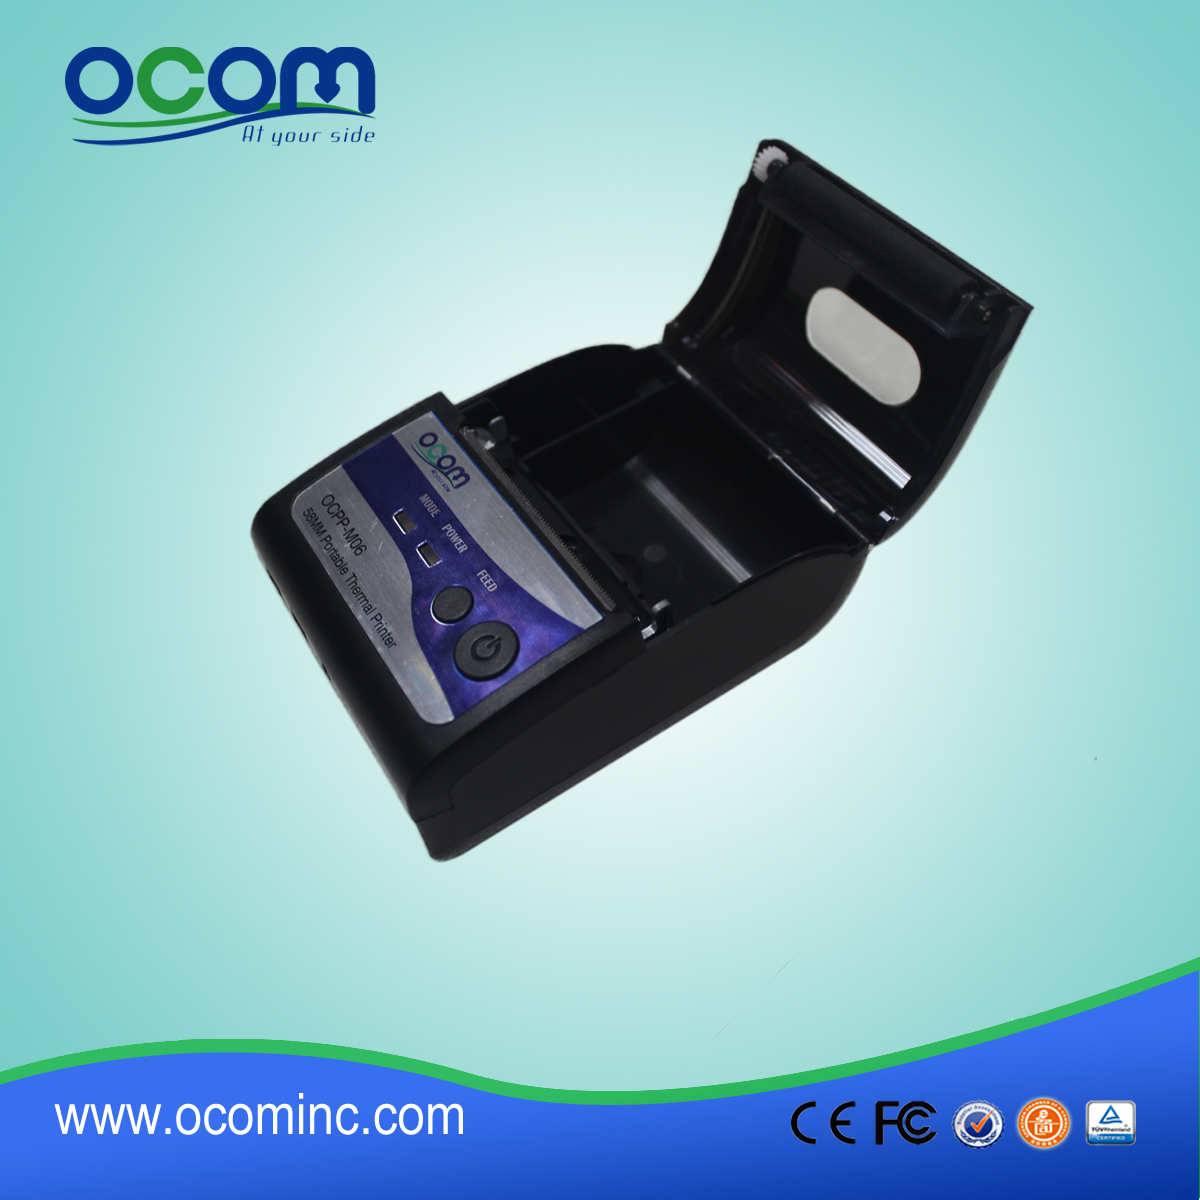 (OCPP-M06) Venda quente Oliveira baixo custo android impressora pos, pos impressora 58mm